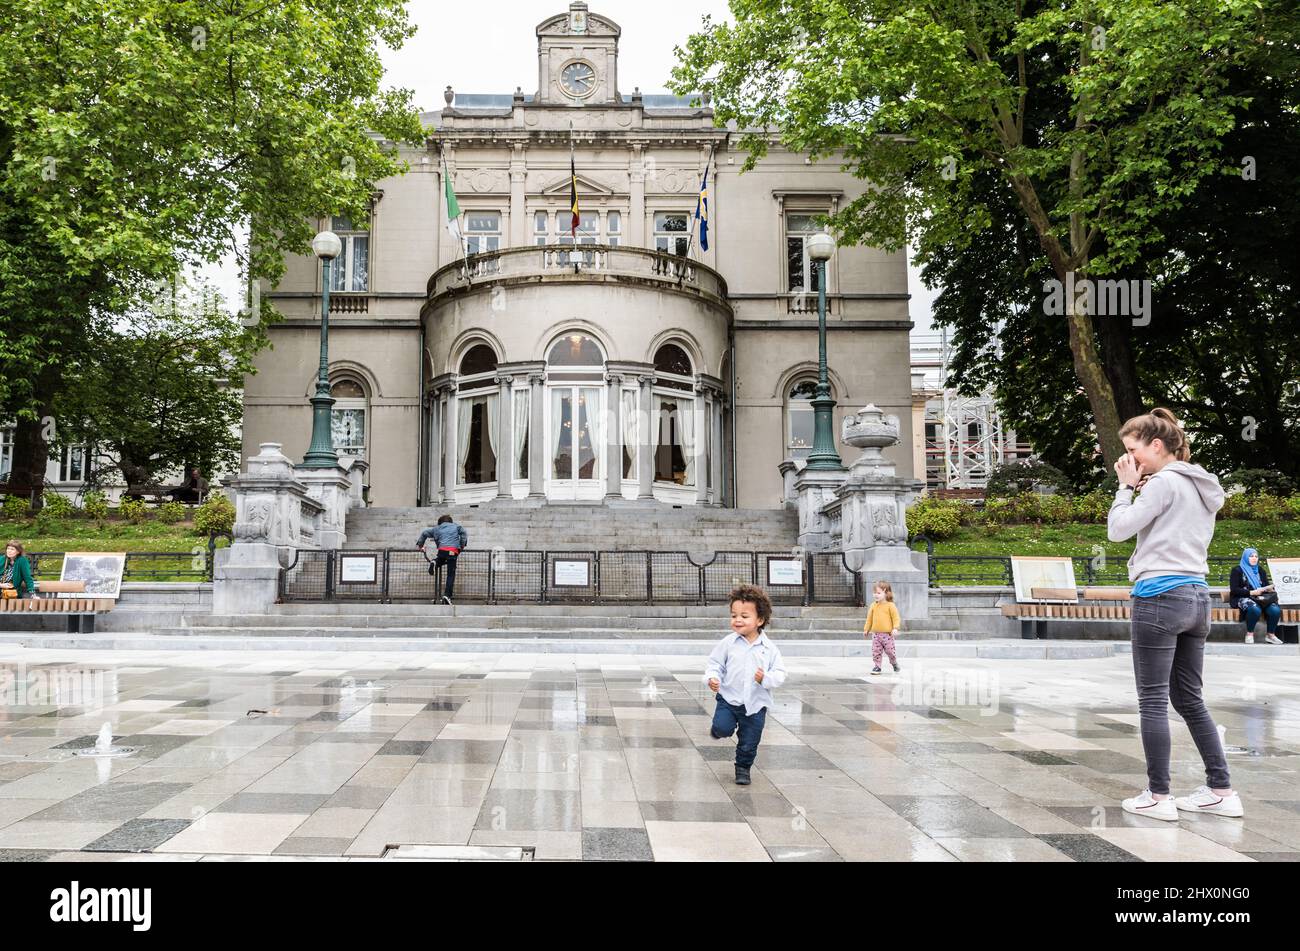 Ixelles, Bruxelles - Belgique - 05 31 2019 - jeune garçon et mère jouant à la fontaine en face de l'hôtel de ville sur la place Fernand Cocq Banque D'Images